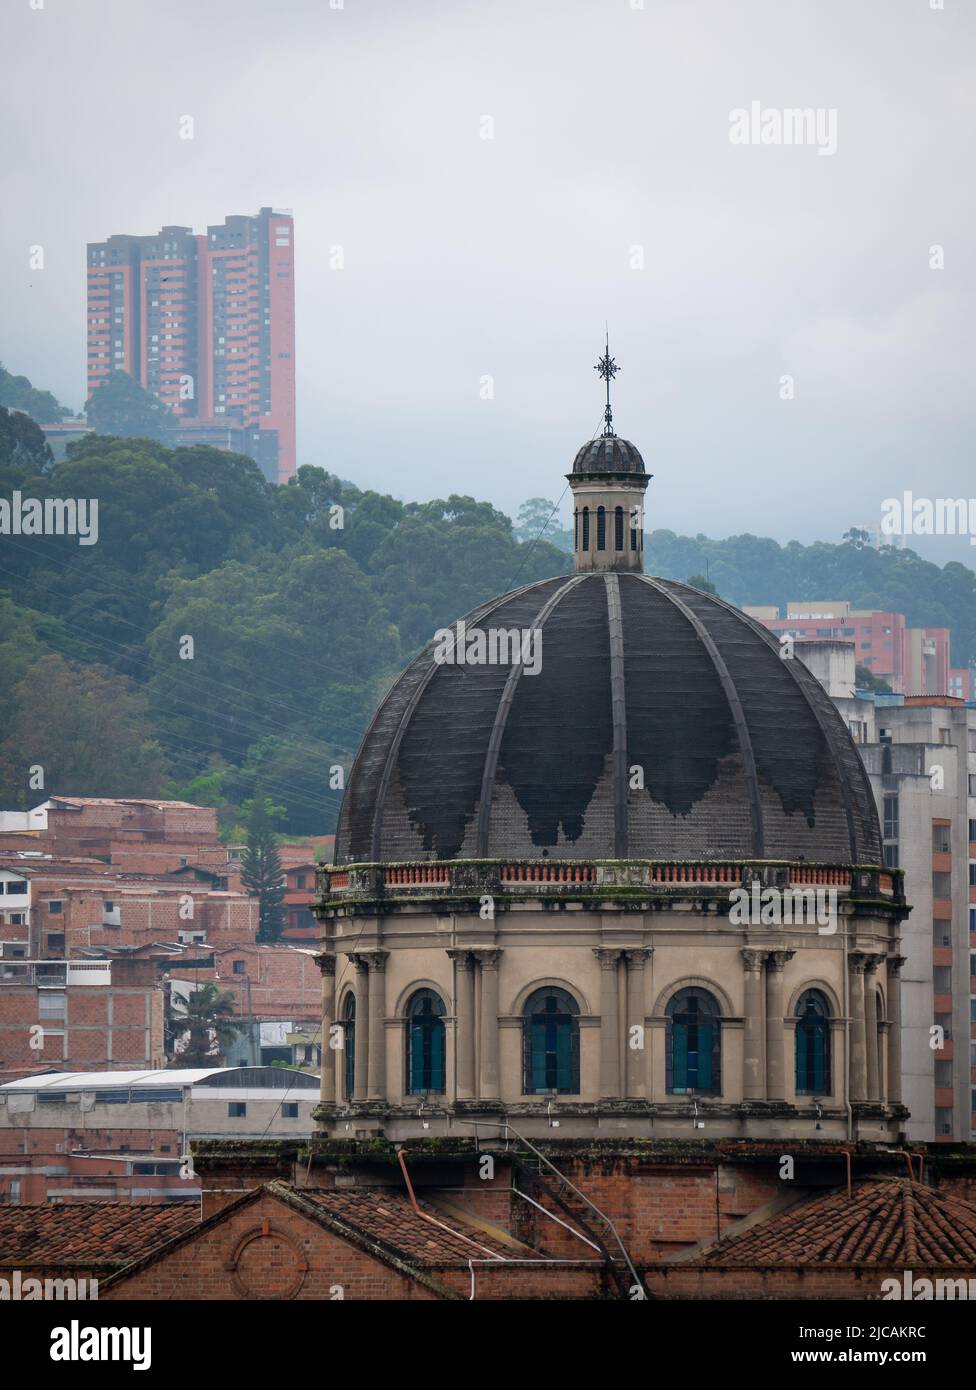 Blick auf die Kathedrale und die Gebäude in der Stadt Medellin, umgeben von grünen Bergen an einem bewölkten Tag Stockfoto